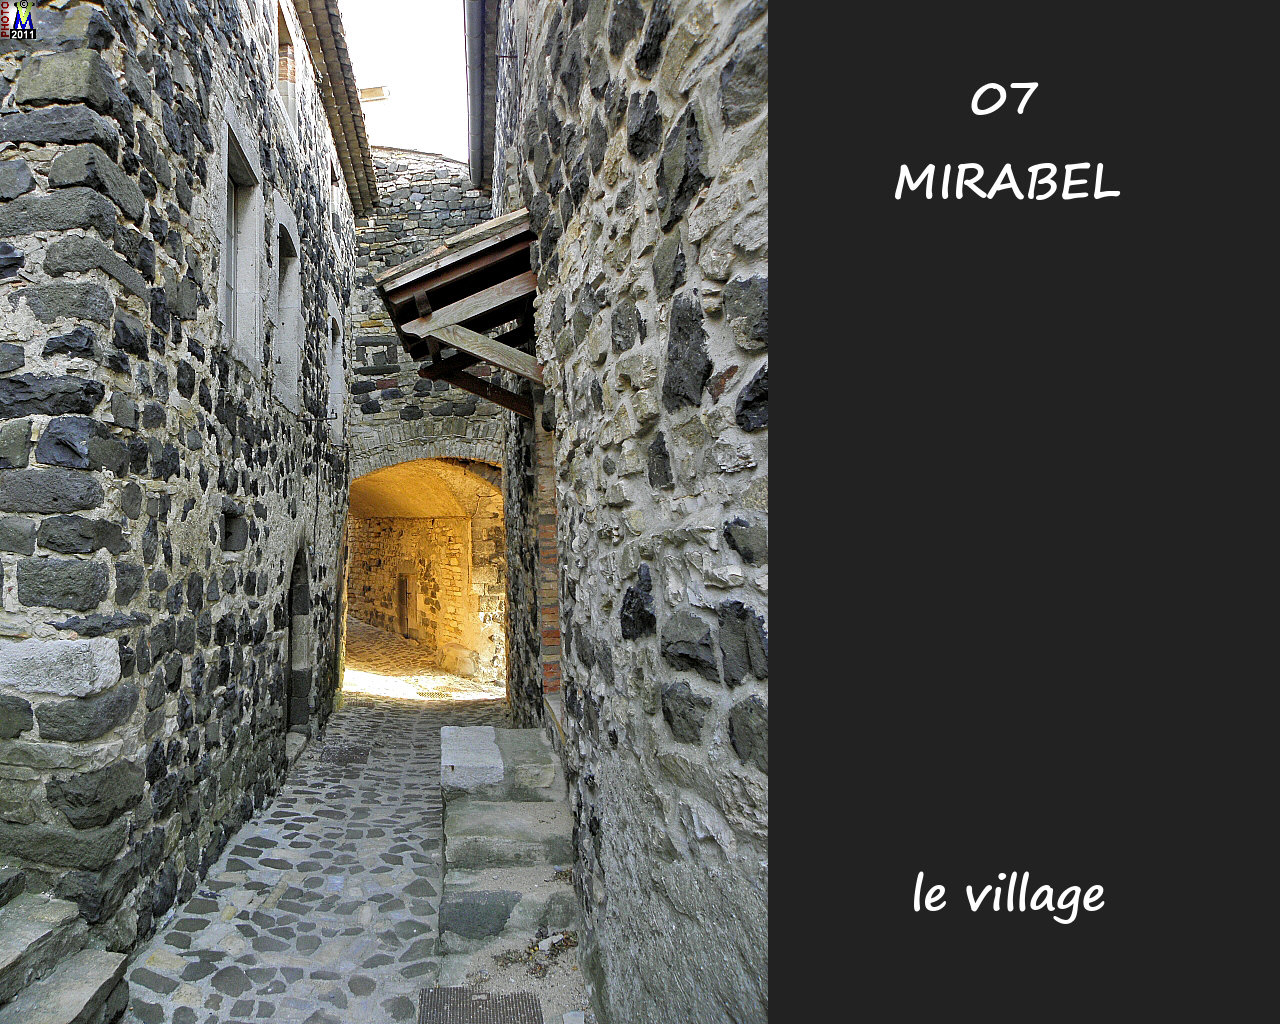 07MIRABEL_village_168.jpg